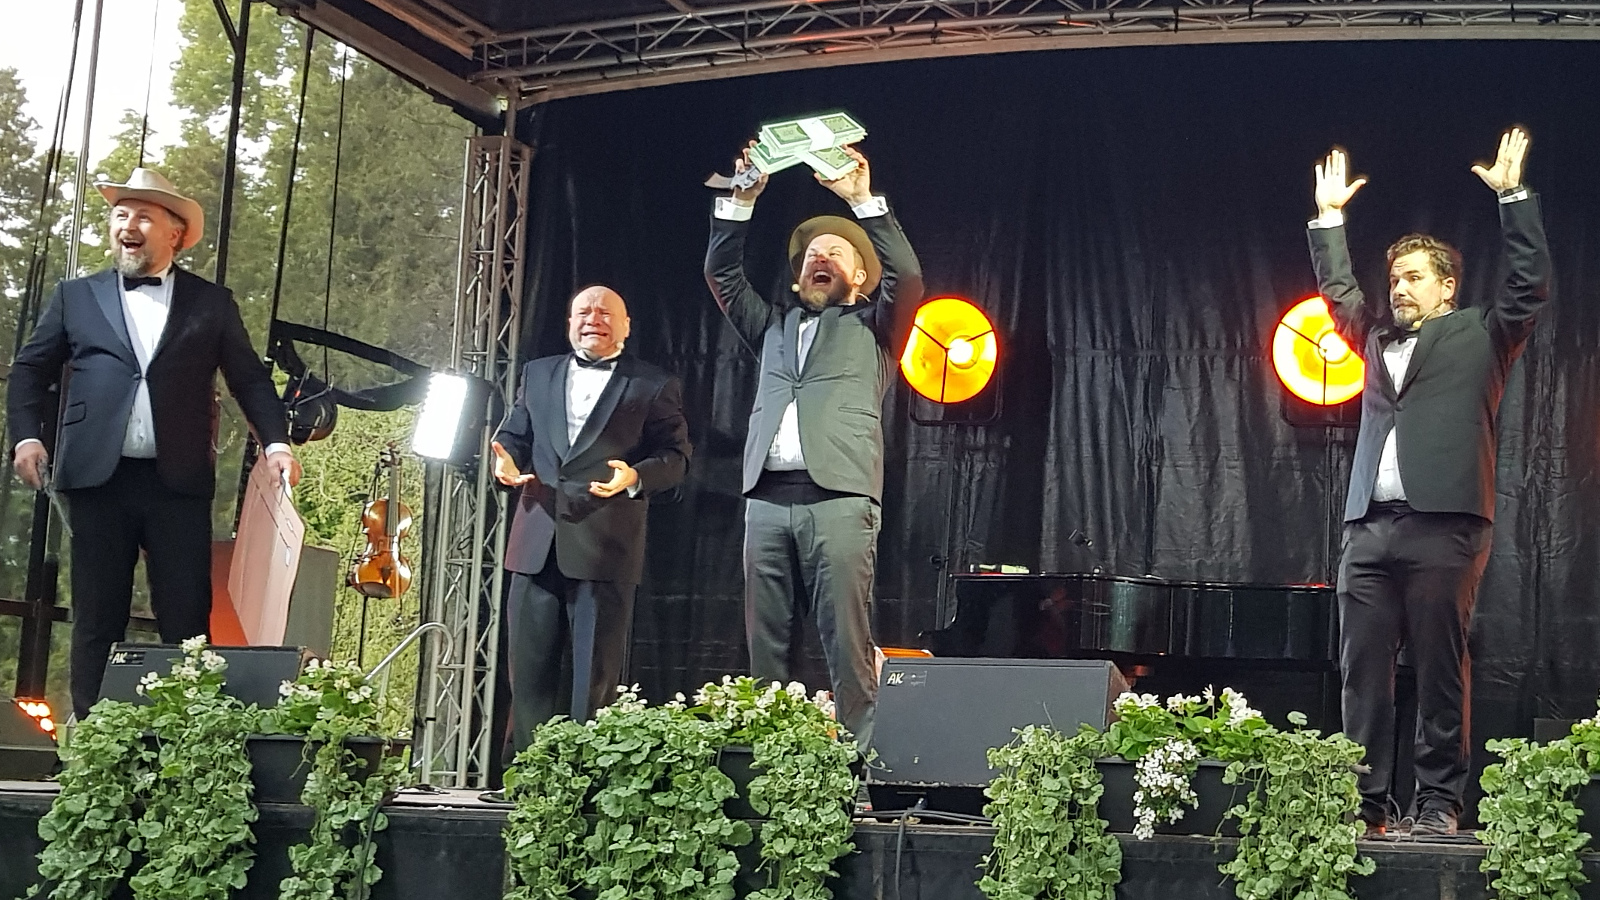 Kuvassa ovat Uuden Kipparikvartetin laulajat ja vasemmalla Tuukka Haapaniemellä on päässään stetson ja kädessään pahvinen matkalaukku. Taaempana Petri Bäckström ja etualalla Sampo Haapaniemi kädessään ylhäällä isoja dollarin seteleitä.  Oikealla Jouni Bäckström kädet ylhäällä.